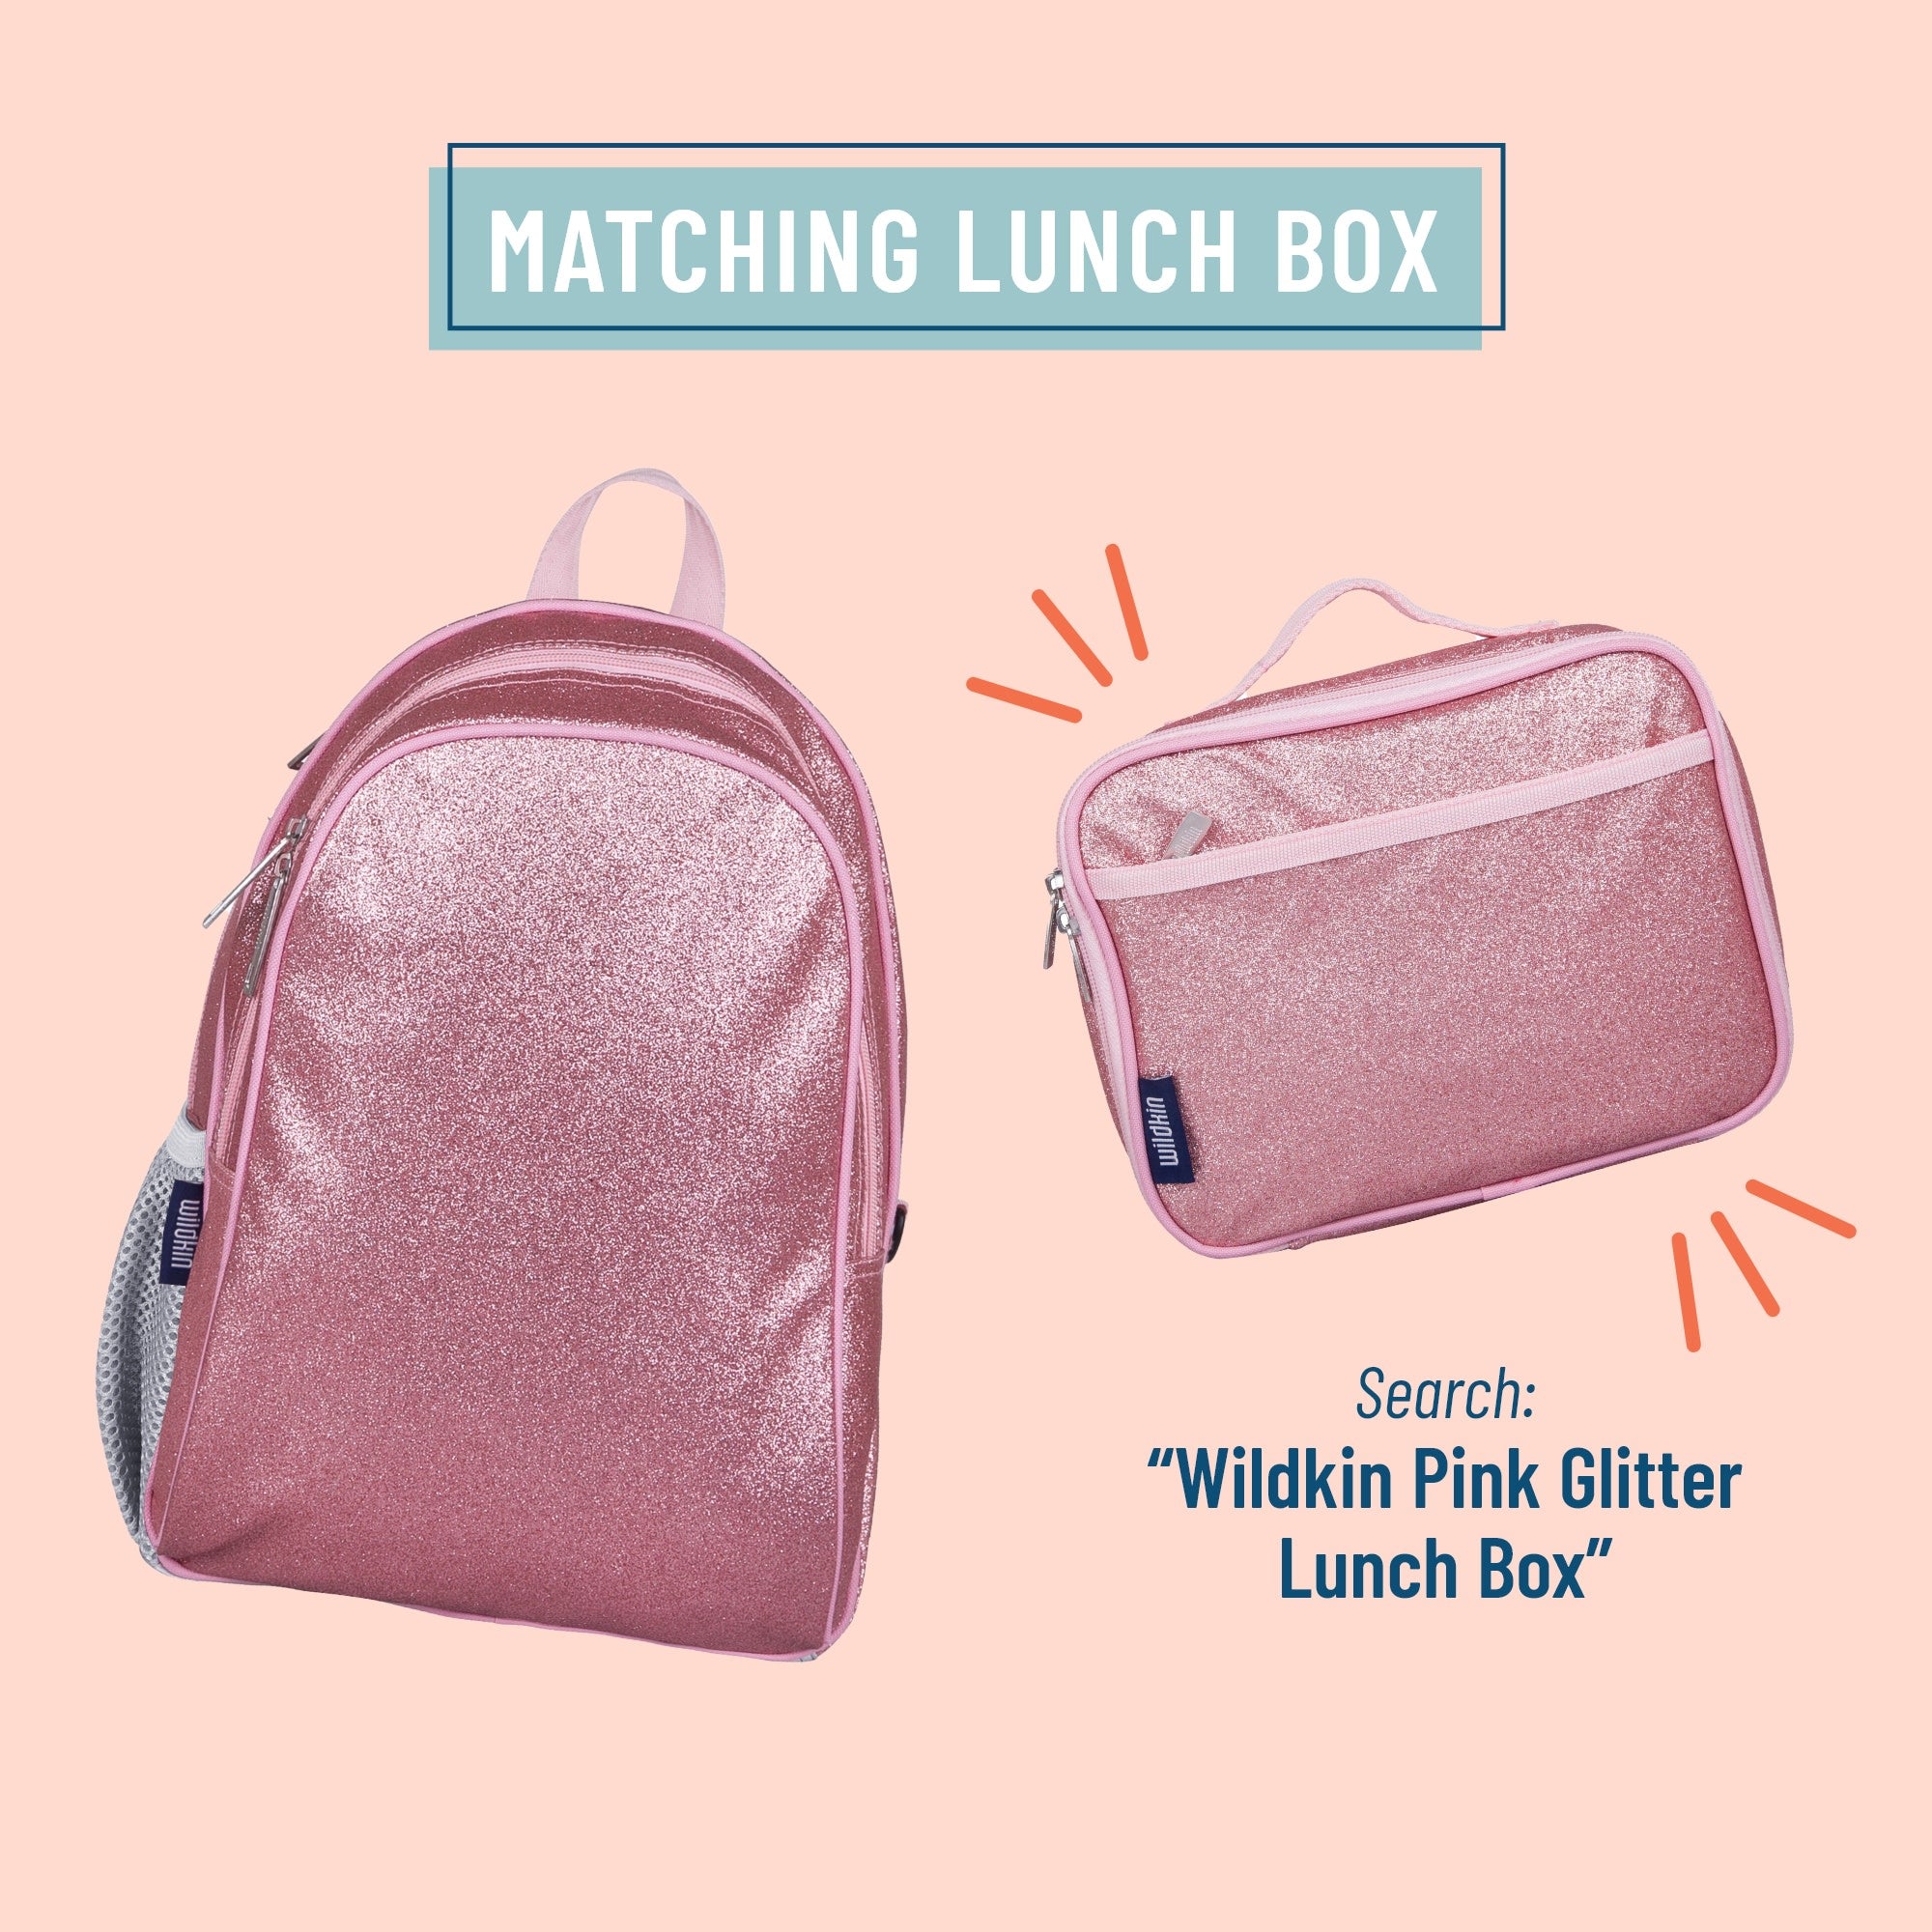 Wildkin Pink Glitter Lunch Box